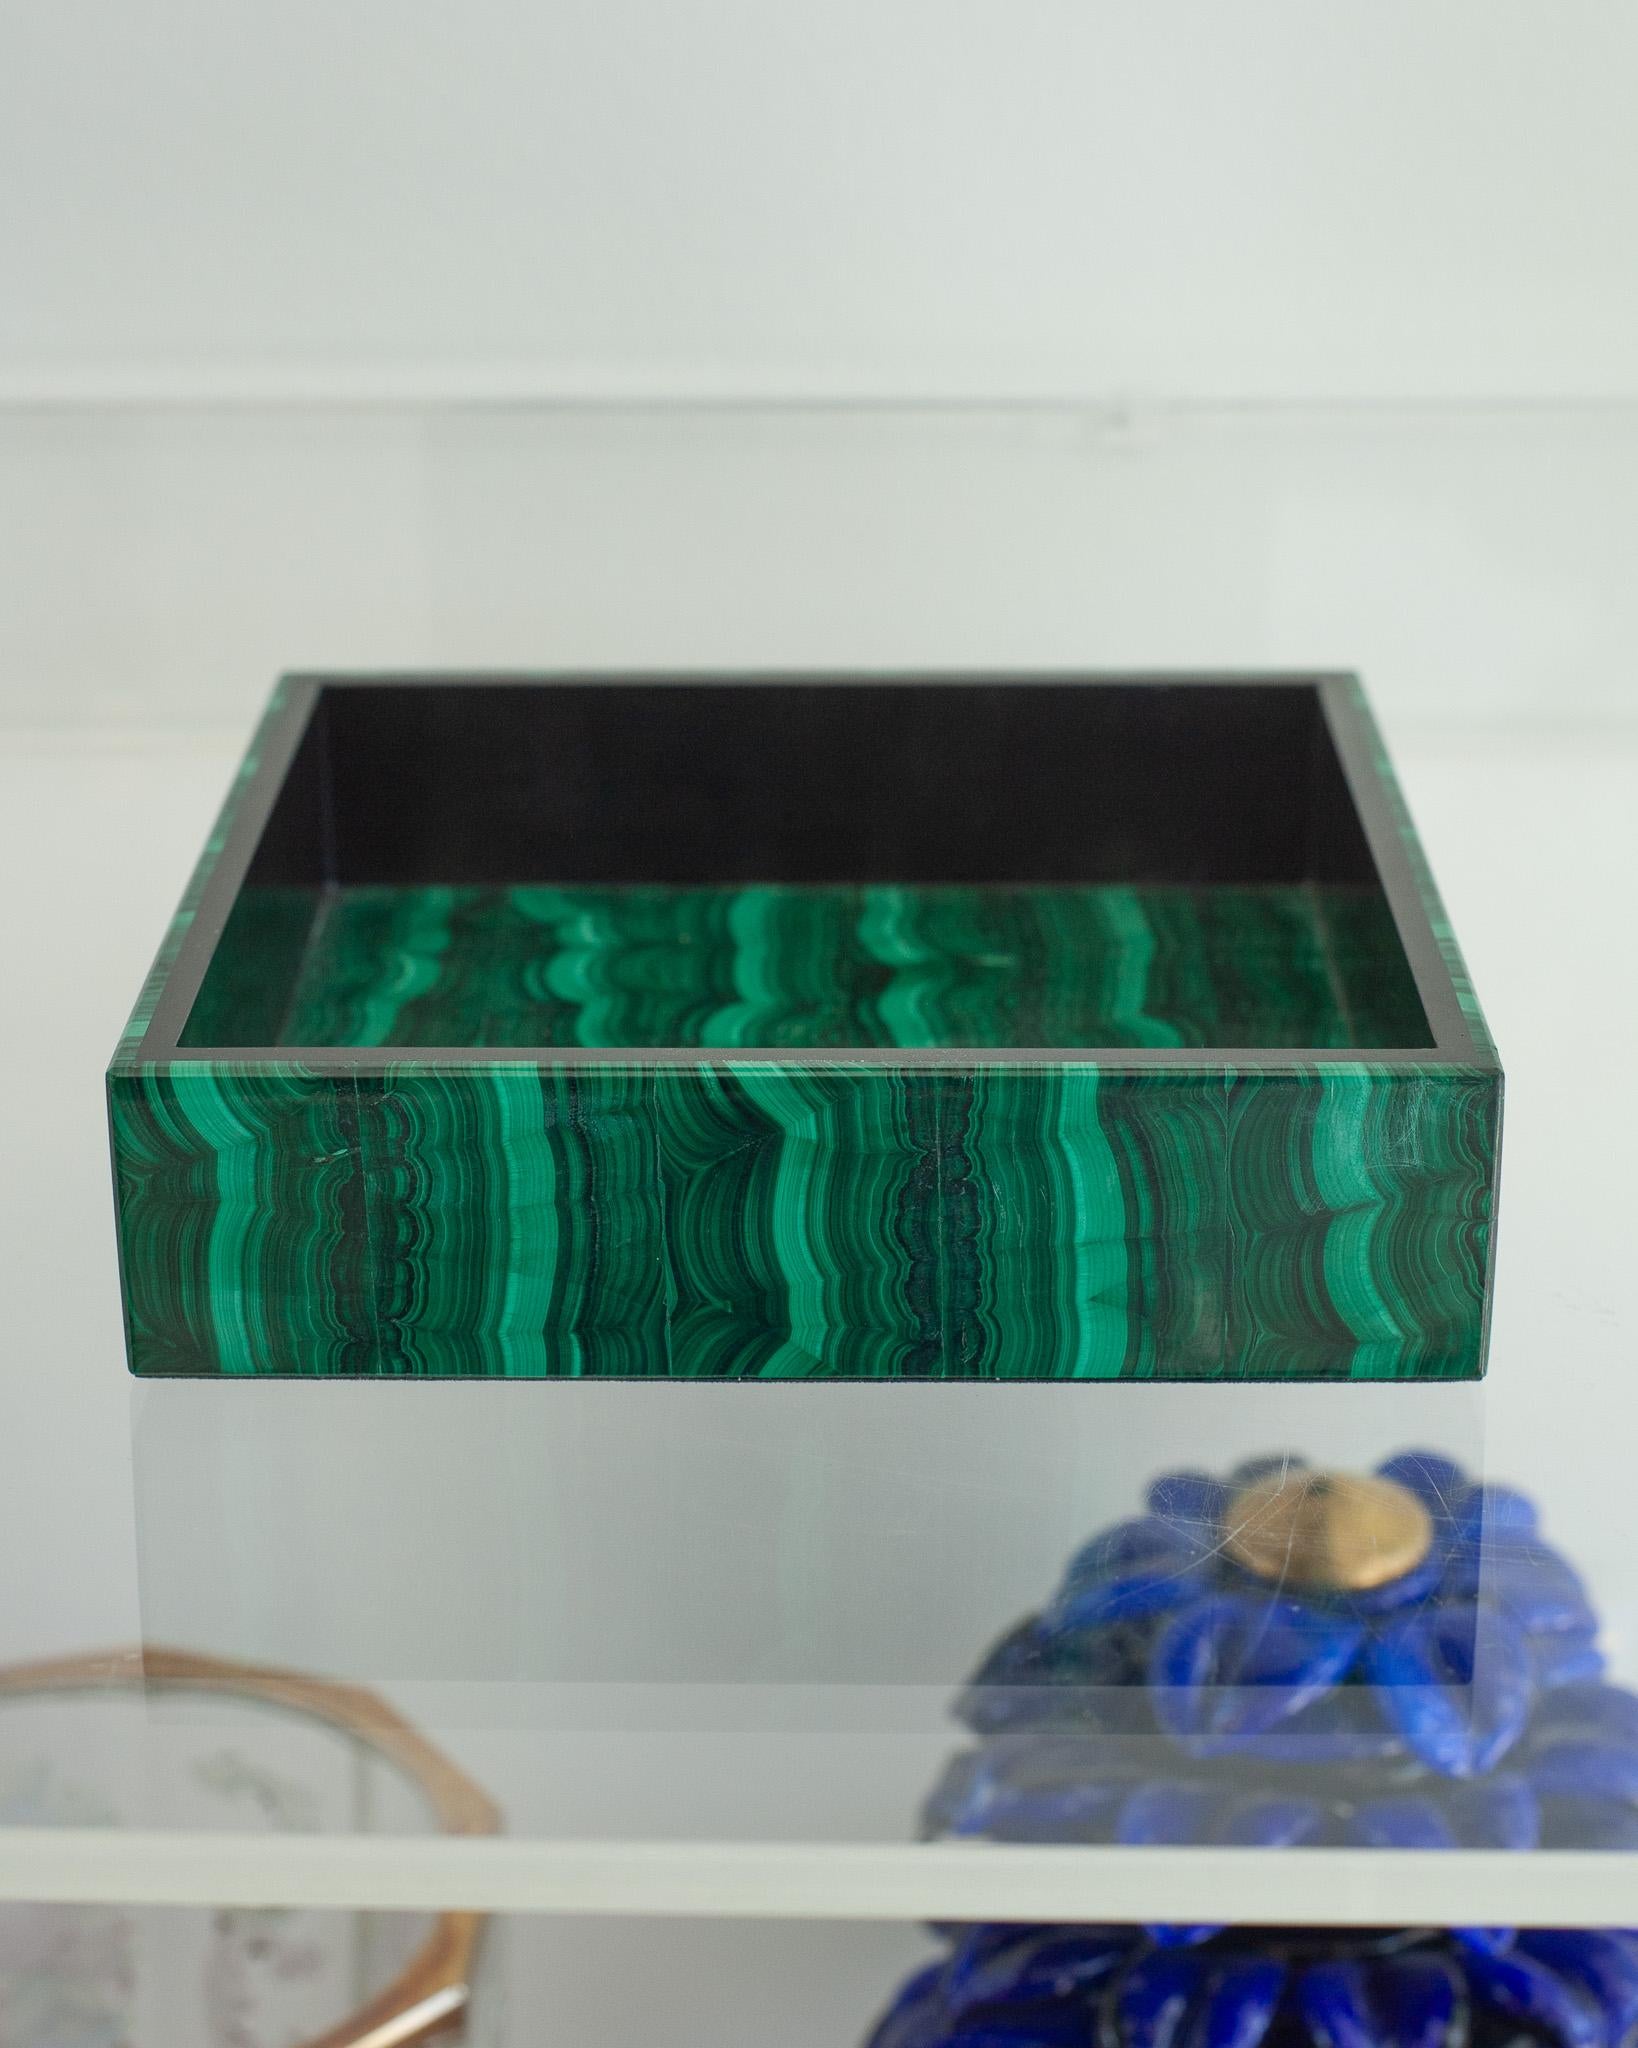 Holen Sie sich mit diesem exquisiten Tablett aus grünem Malachit und schwarzem Marmor heilende Energie in Ihr Zuhause. Dieses Tablett ist wunderschön mit fachmännischer Konstruktion und außergewöhnlich abgestimmten Streifen Malachit gemacht. Mit